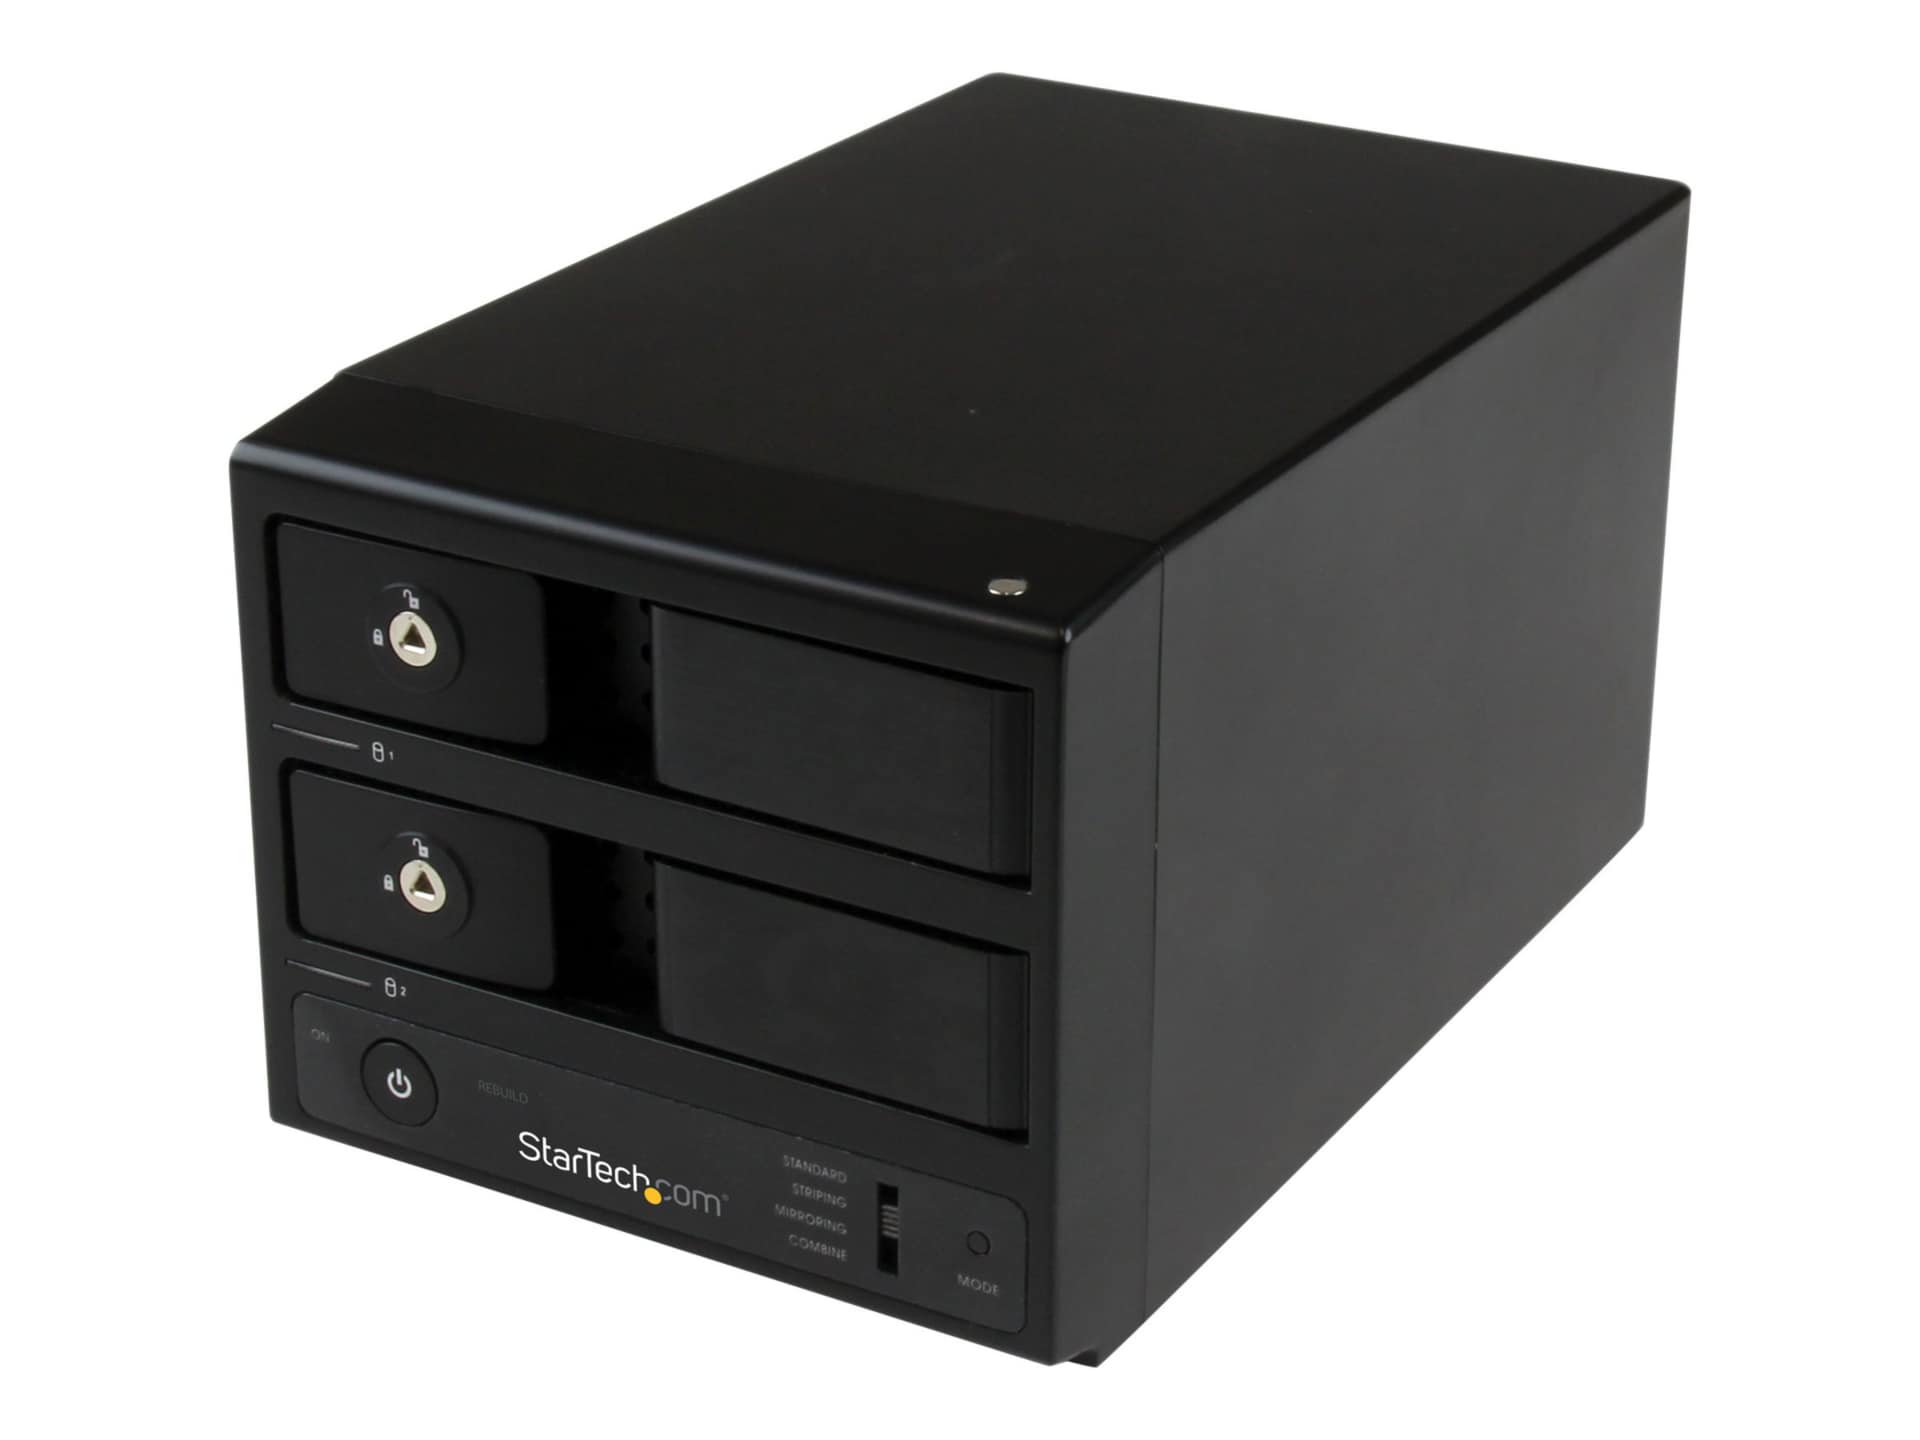 StarTech.com Dual Bay USB 3.0/eSATA Hard Drive Enclosure 3.5" - UASP